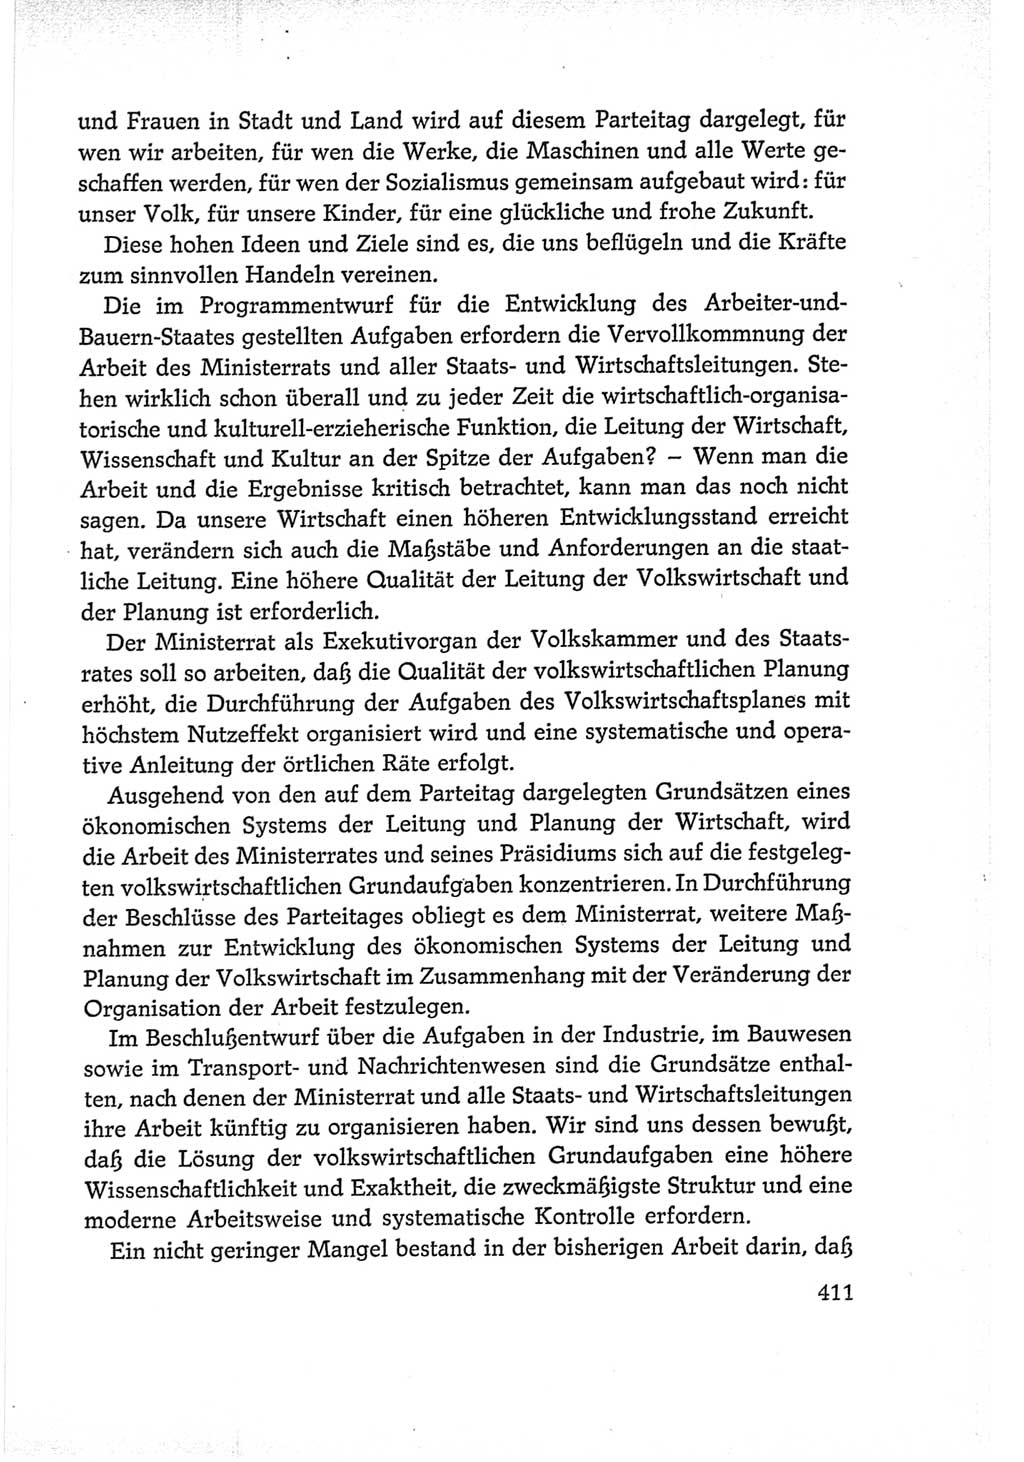 Protokoll der Verhandlungen des Ⅵ. Parteitages der Sozialistischen Einheitspartei Deutschlands (SED) [Deutsche Demokratische Republik (DDR)] 1963, Band Ⅰ, Seite 411 (Prot. Verh. Ⅵ. PT SED DDR 1963, Bd. Ⅰ, S. 411)